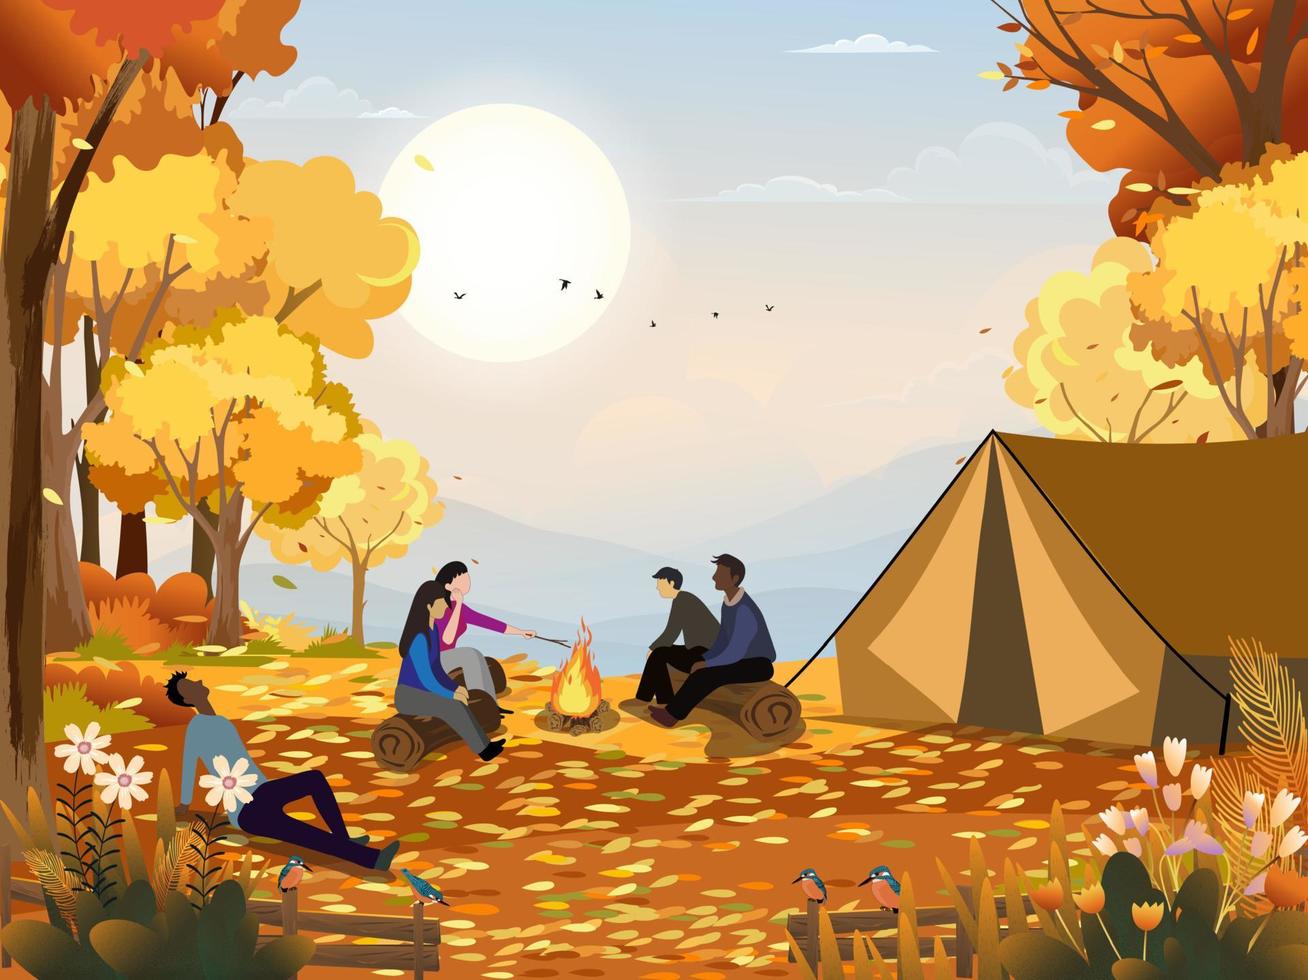 Familie genießt Campingurlaub auf dem Land im Herbst, Gruppe von Menschen, die in der Nähe des Zeltes sitzen und am Lagerfeuer Spaß haben, miteinander zu reden, Vektor ländliche Landschaft im Herbstwaldbaum mit Sonnenuntergangshimmel